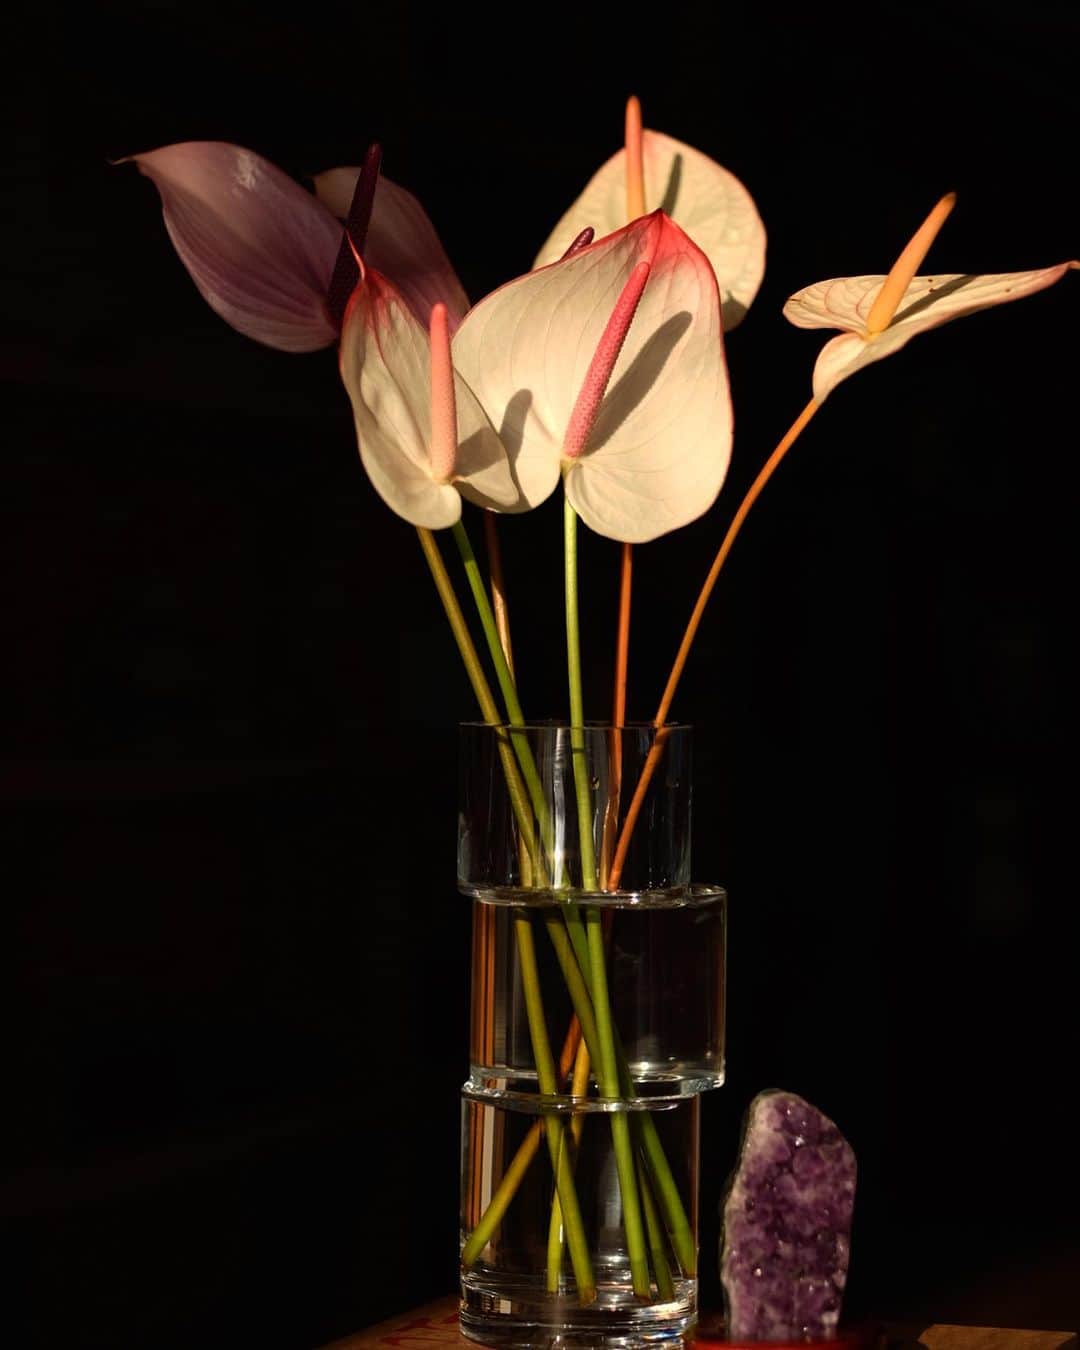 ケリーのインスタグラム：「𝘑𝘶𝘴𝘵 𝘢 𝘴𝘪𝘮𝘱𝘭𝘦 𝘷𝘢𝘴𝘦 𝘰𝘧 𝘧𝘭𝘰𝘸𝘦𝘳𝘴 𝘣𝘳𝘪𝘨𝘩𝘵𝘦𝘯𝘴 𝘶𝘱 𝘢 𝘳𝘰𝘰𝘮 𝘢𝘯𝘥 𝘺𝘰𝘶𝘳 𝘮𝘰𝘰𝘥 𝘵𝘰𝘰 🧡  皆さんはお部屋にお花を飾ったりしますか❓🌝 大人になってからお花を飾るようになって、お部屋の雰囲気も明るくなるし、季節に合わせていろいろお花を飾るのも楽しい💐  花瓶は @livingmotif で購入したものです😌」